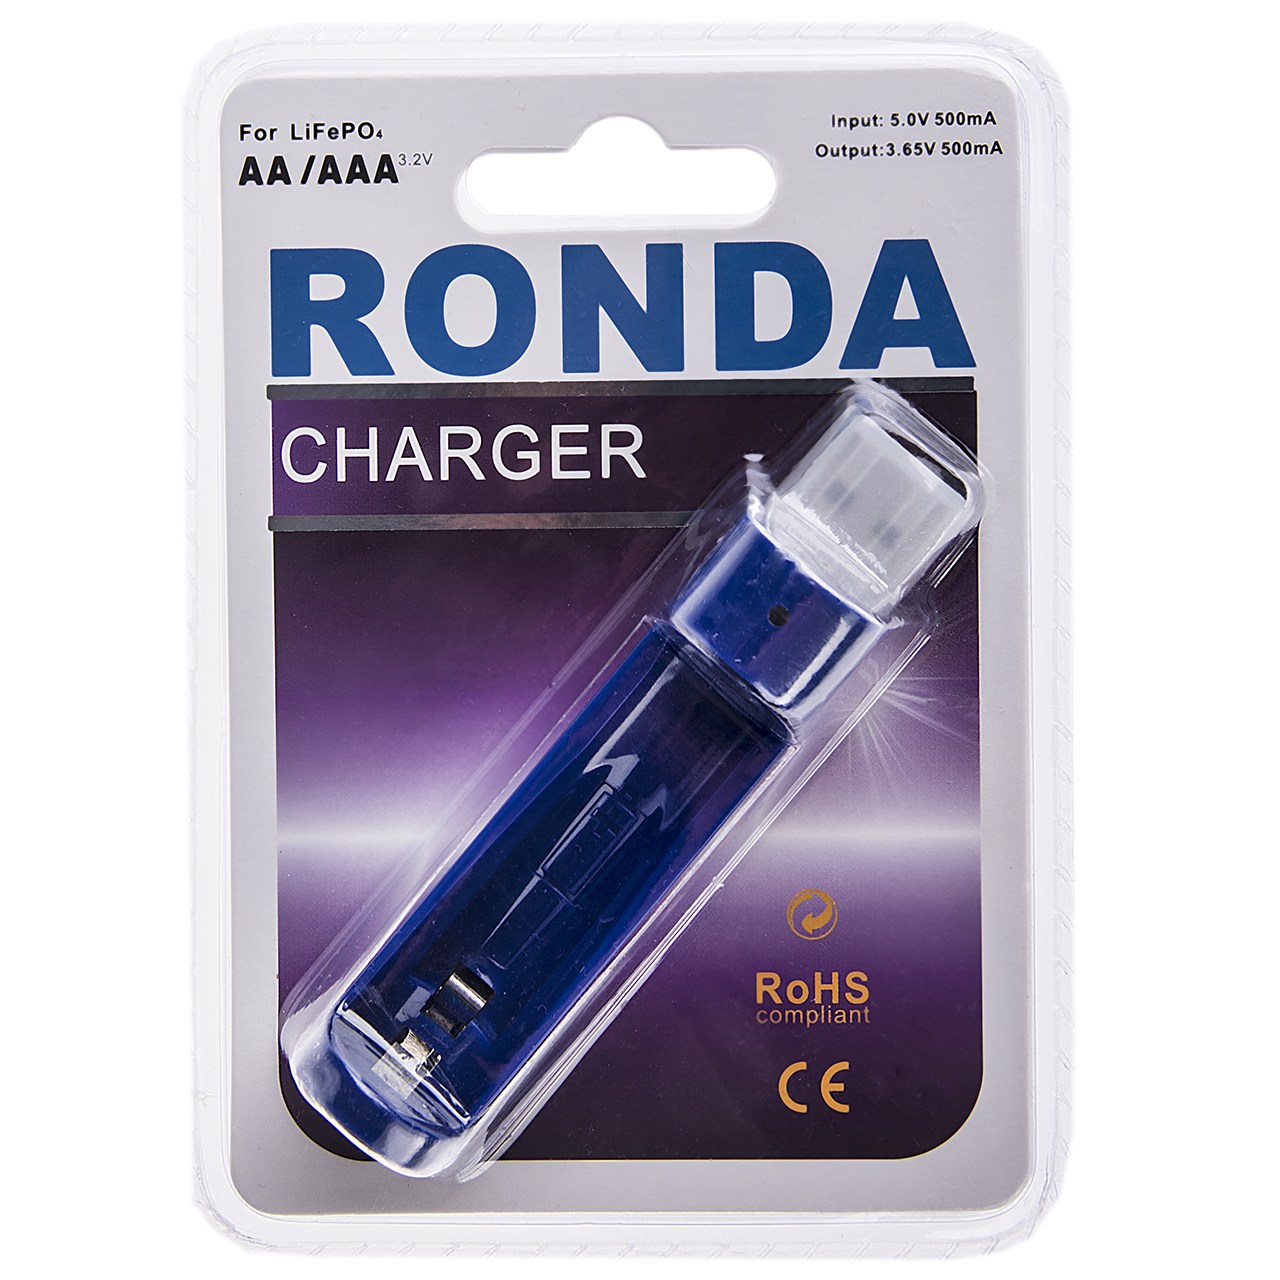 شارژر باتری روندا مناسب برای باتری های قلمی و نیم قلمی روندا نوع LiFePO4 3.2v